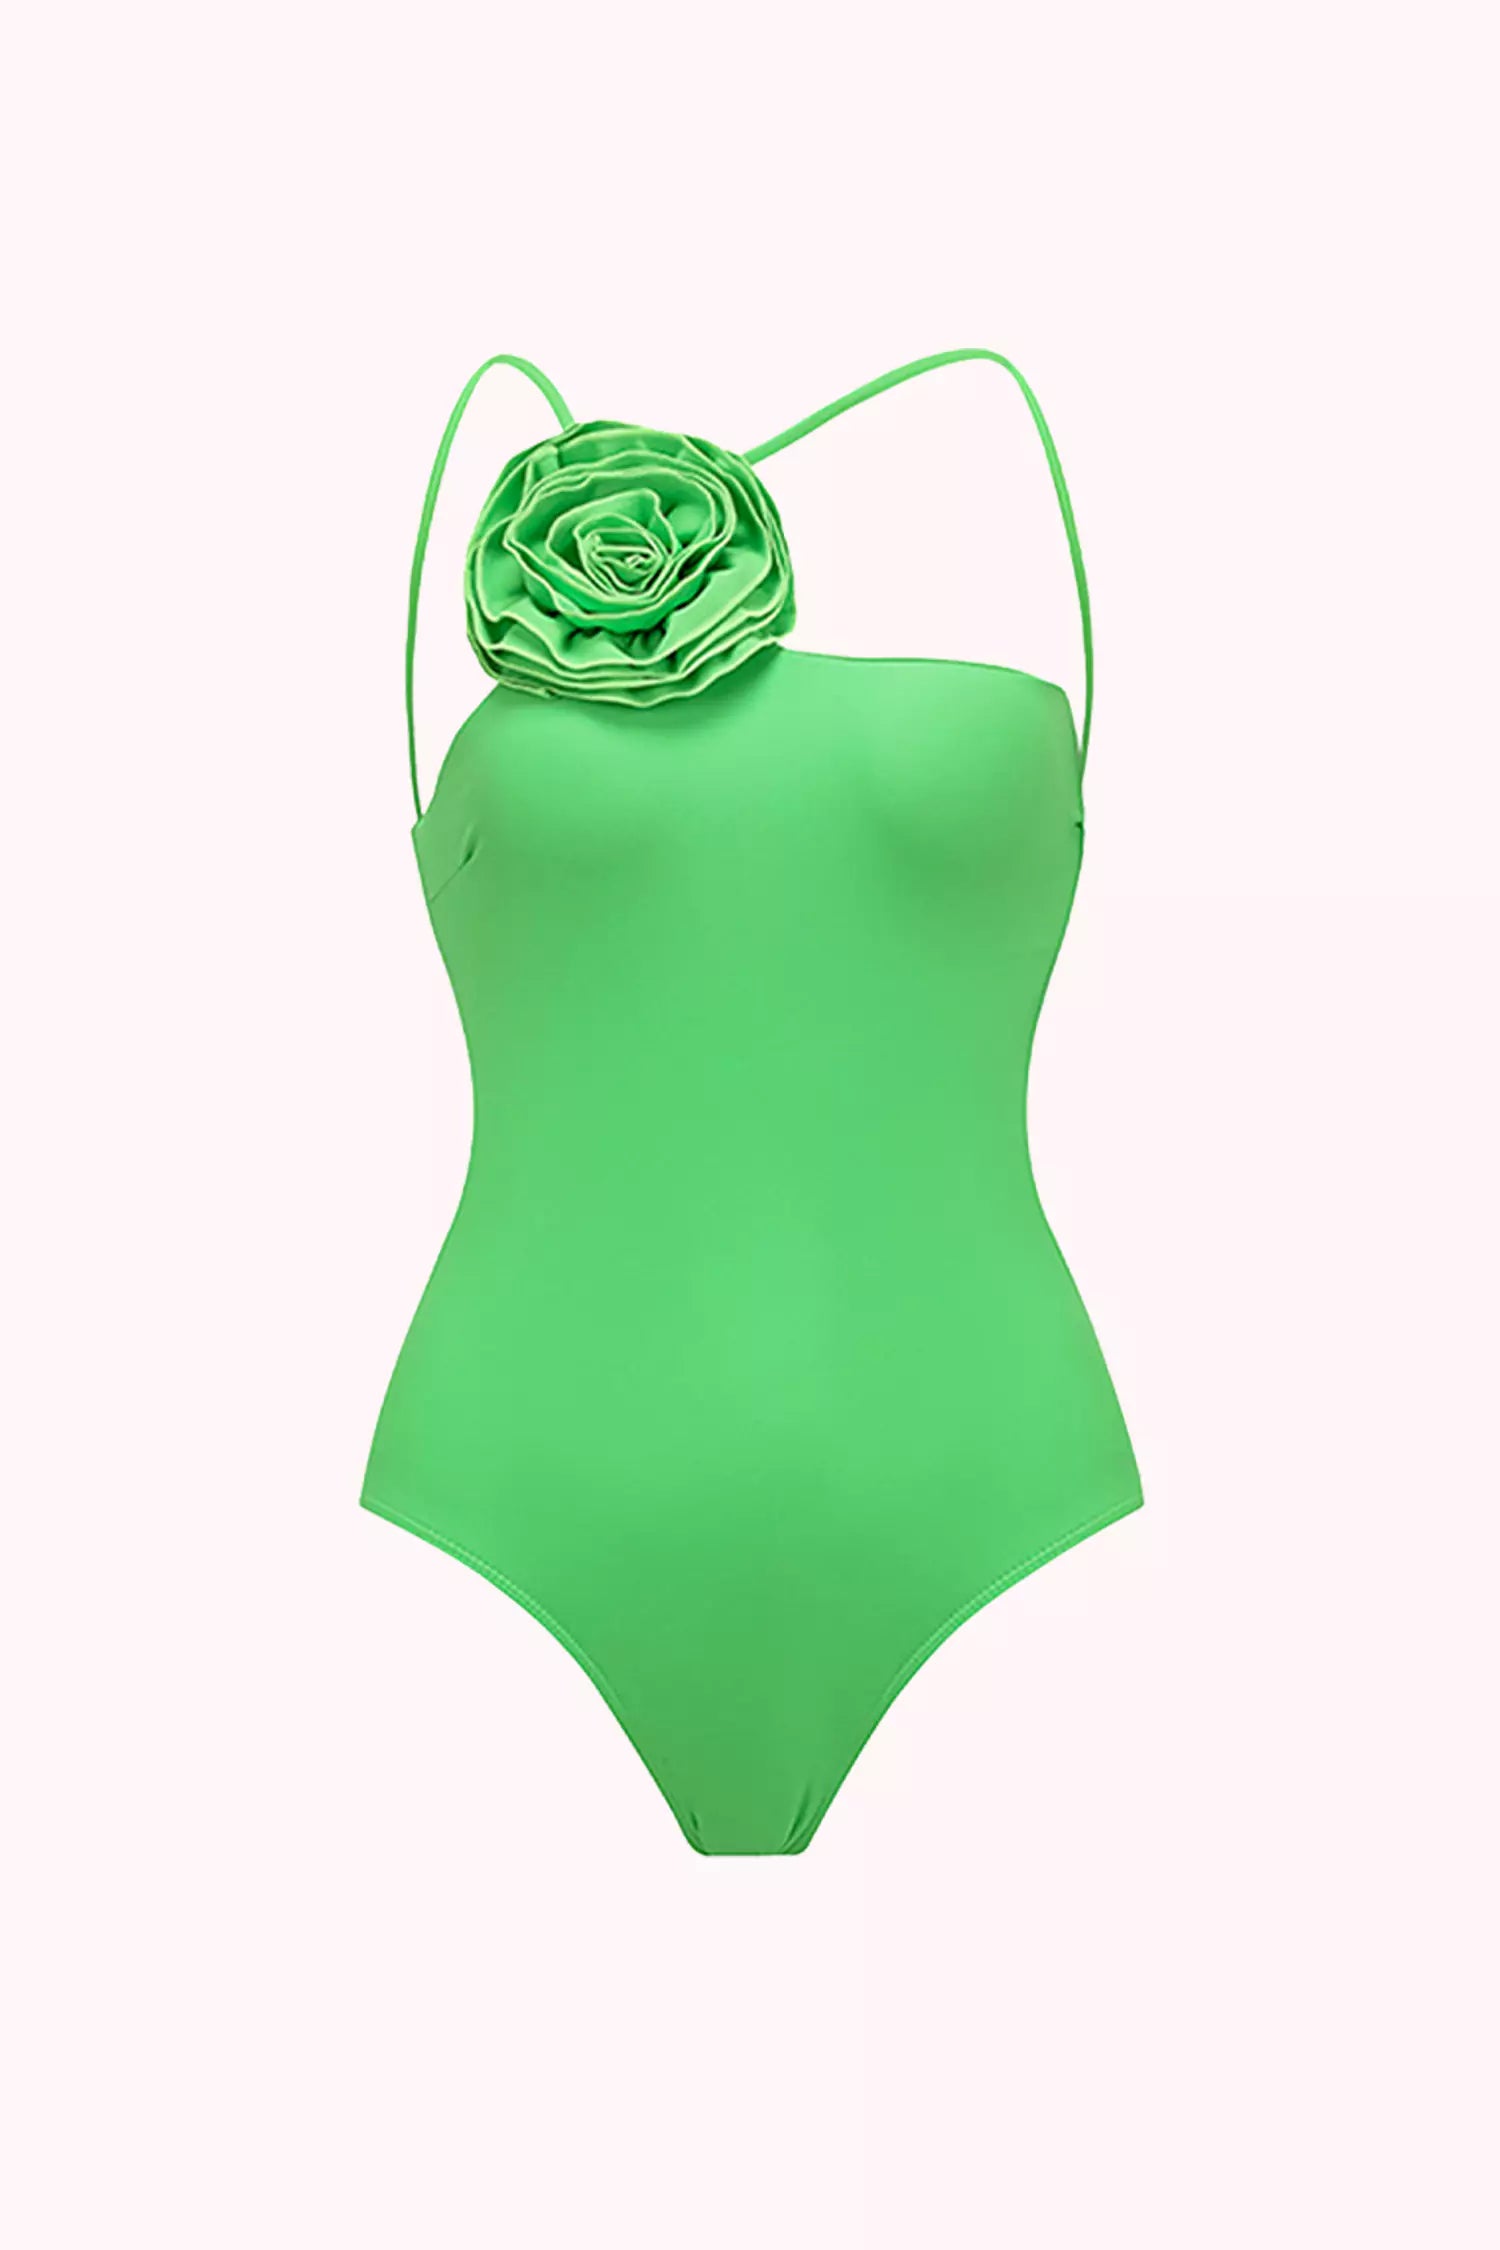 Brinley Green Floral One Piece Swimwear